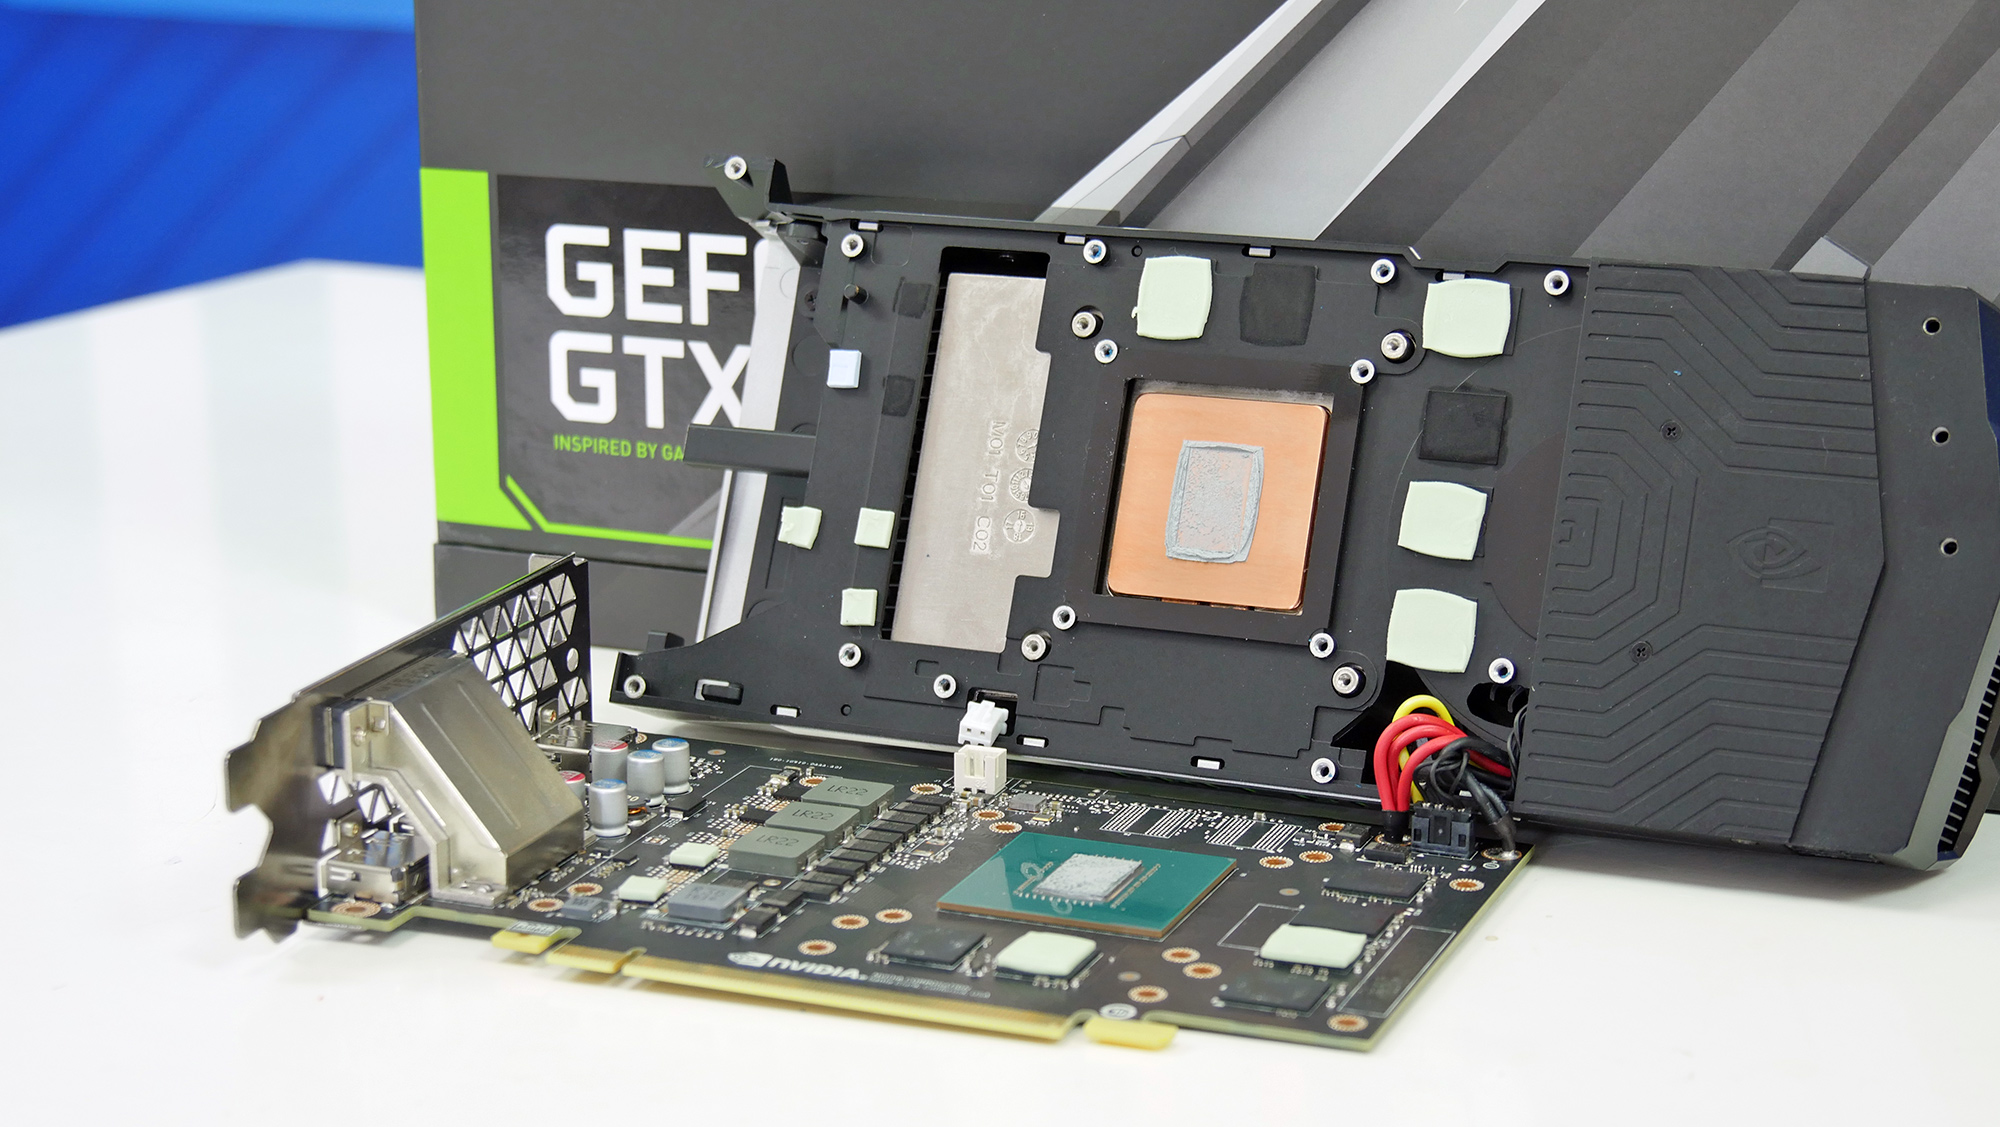 Immagine pubblicata in relazione al seguente contenuto: Galleria fotografica della card NVIDIA GeForce GTX 1060 Founder's Edition | Nome immagine: news24561_GeForce-GTX-1060_5.jpg